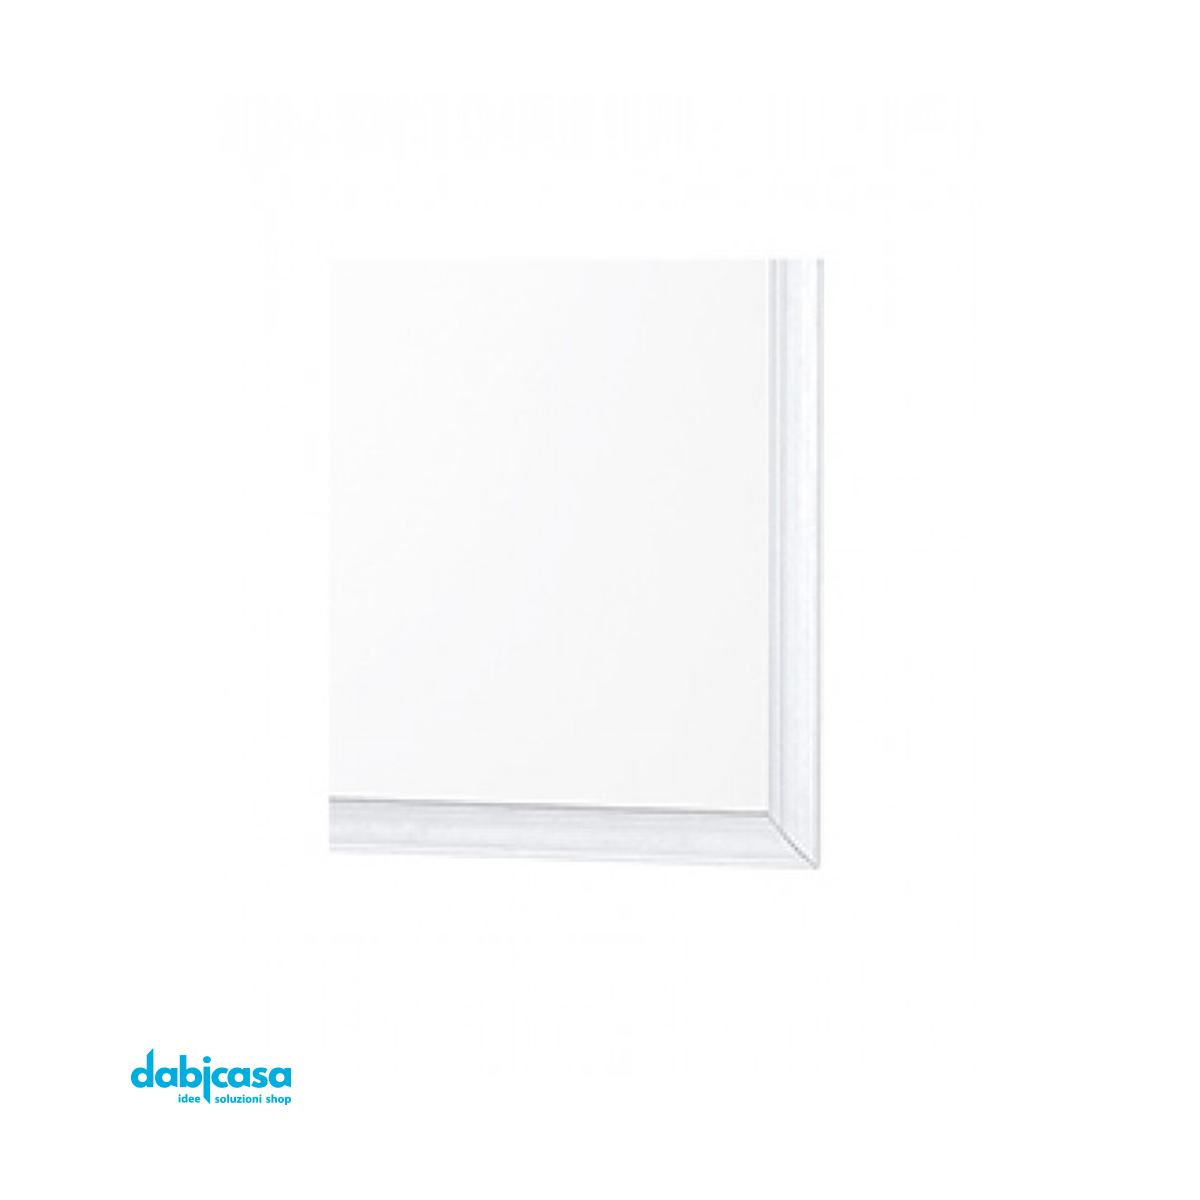 Specchio "Linea White" Con Cornice Colore Bianco in ABS 50x60cm freeshipping - Dabicasa